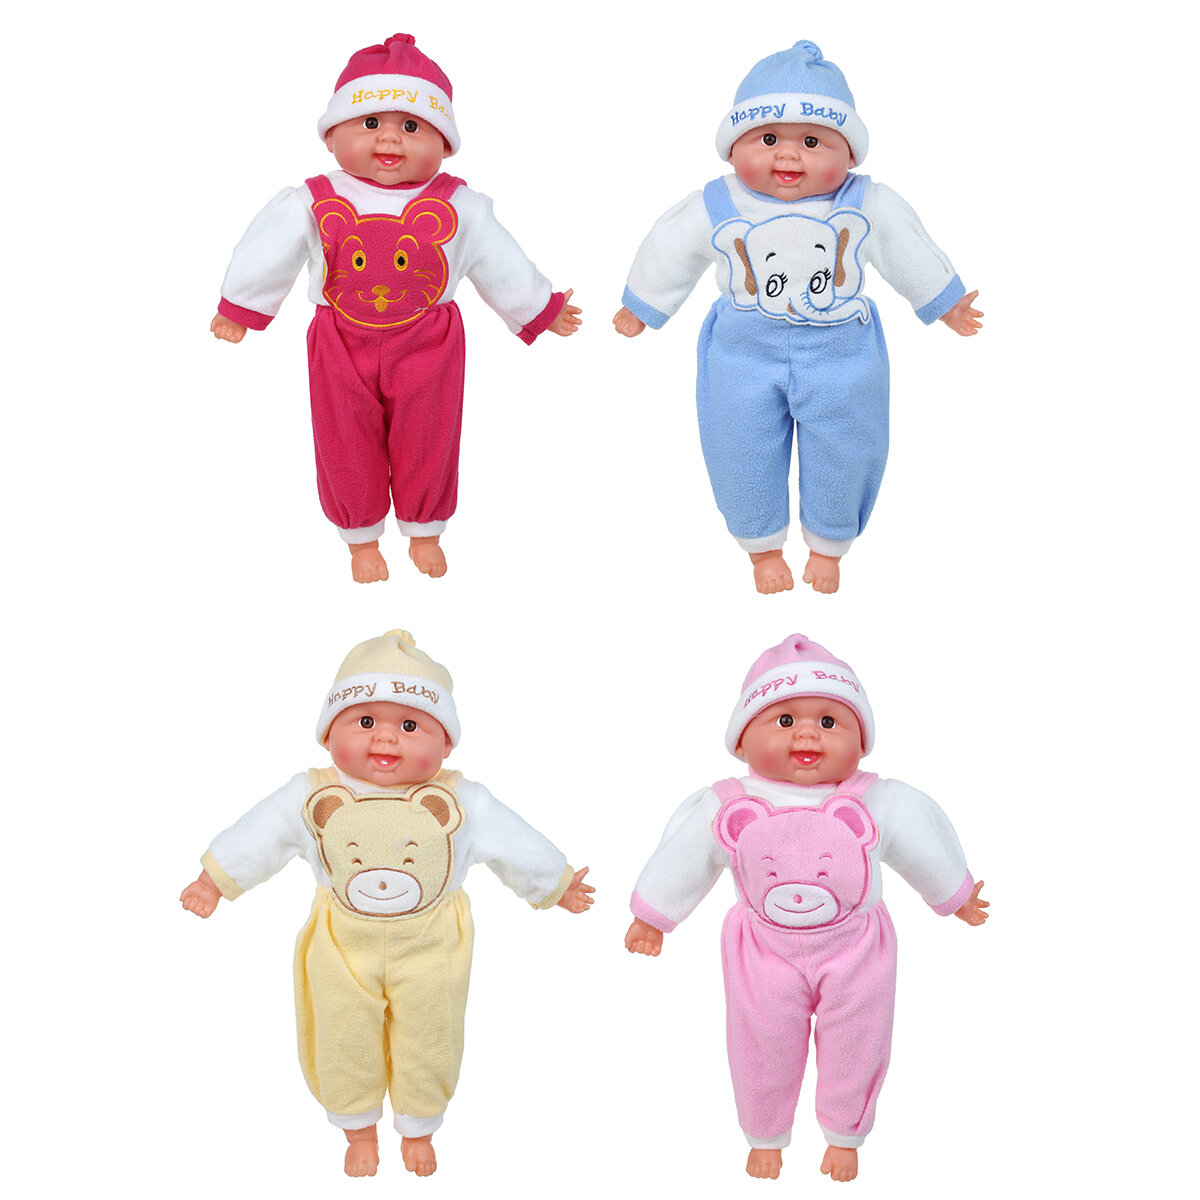 50 CM Multi-color Simulatie Siliconen Vinyl Levensechte Realistische Reborn Pasgeboren Babypop Speelgoed met Doek Pak voor Kids Gift